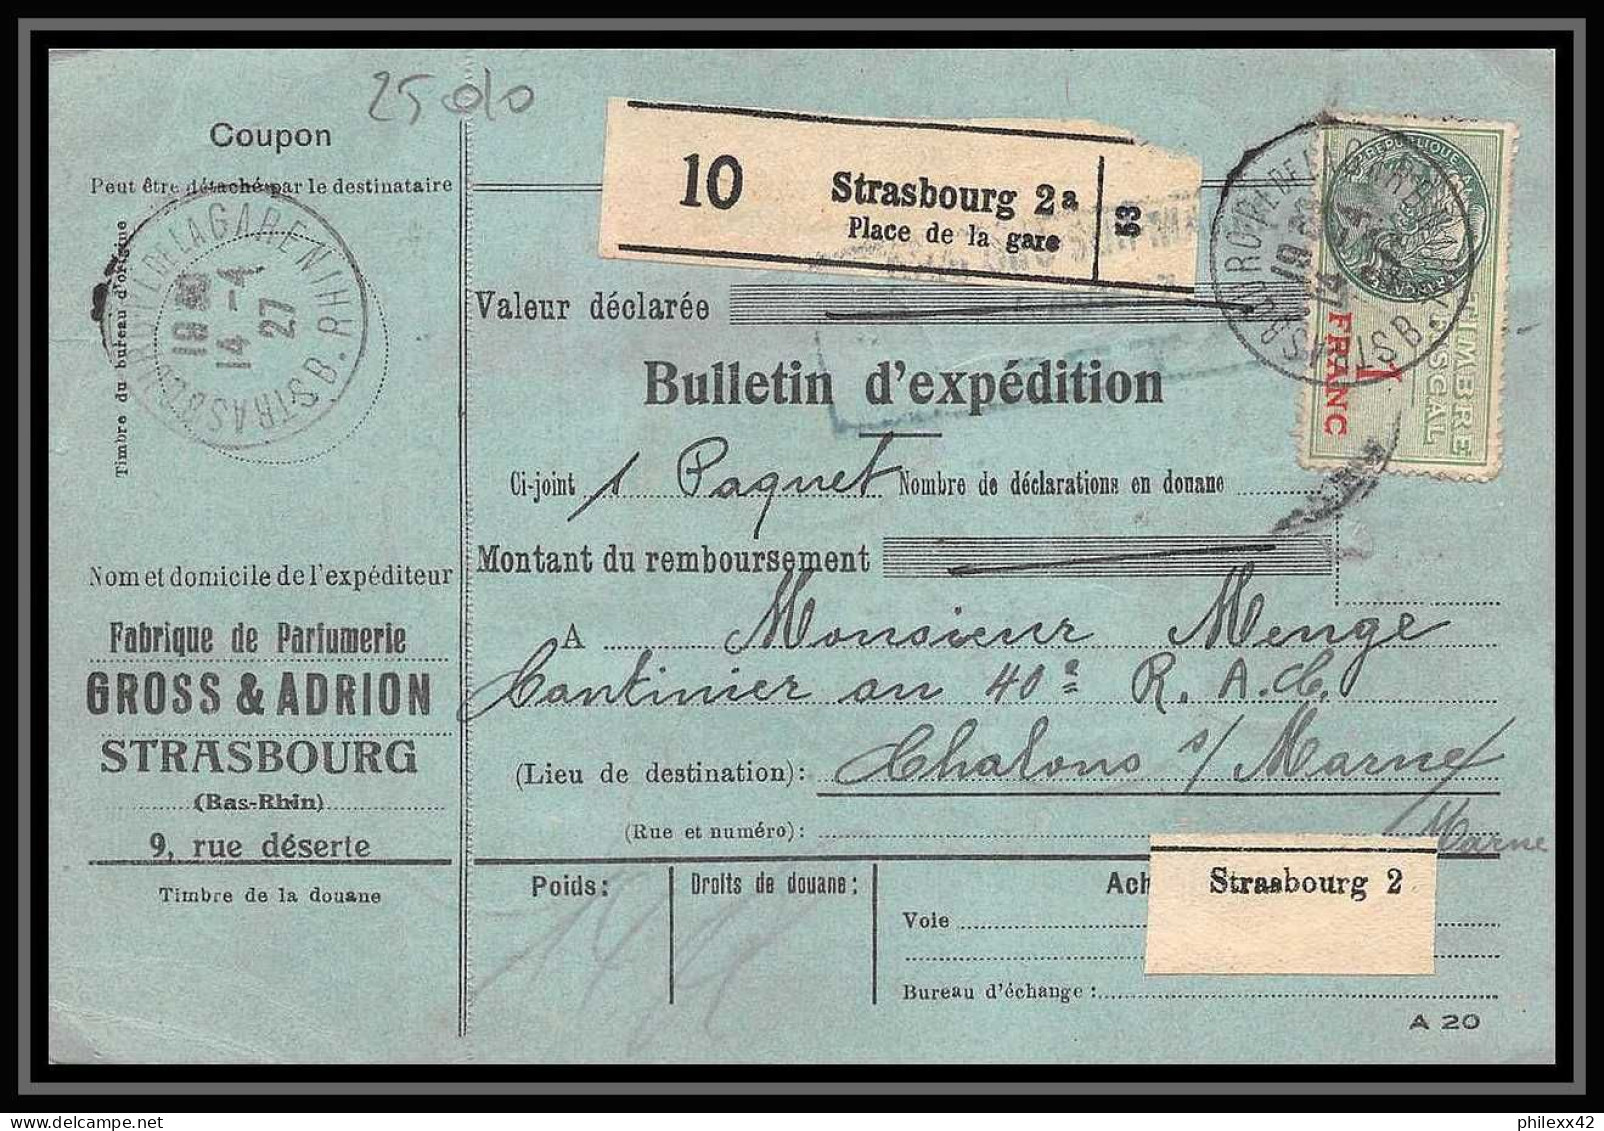 25010 Bulletin D'expédition France Colis Postaux Fiscal Haut Rhin - 1927 Strasbourg Merson 123+145 Alsace-Lorraine  - Briefe U. Dokumente